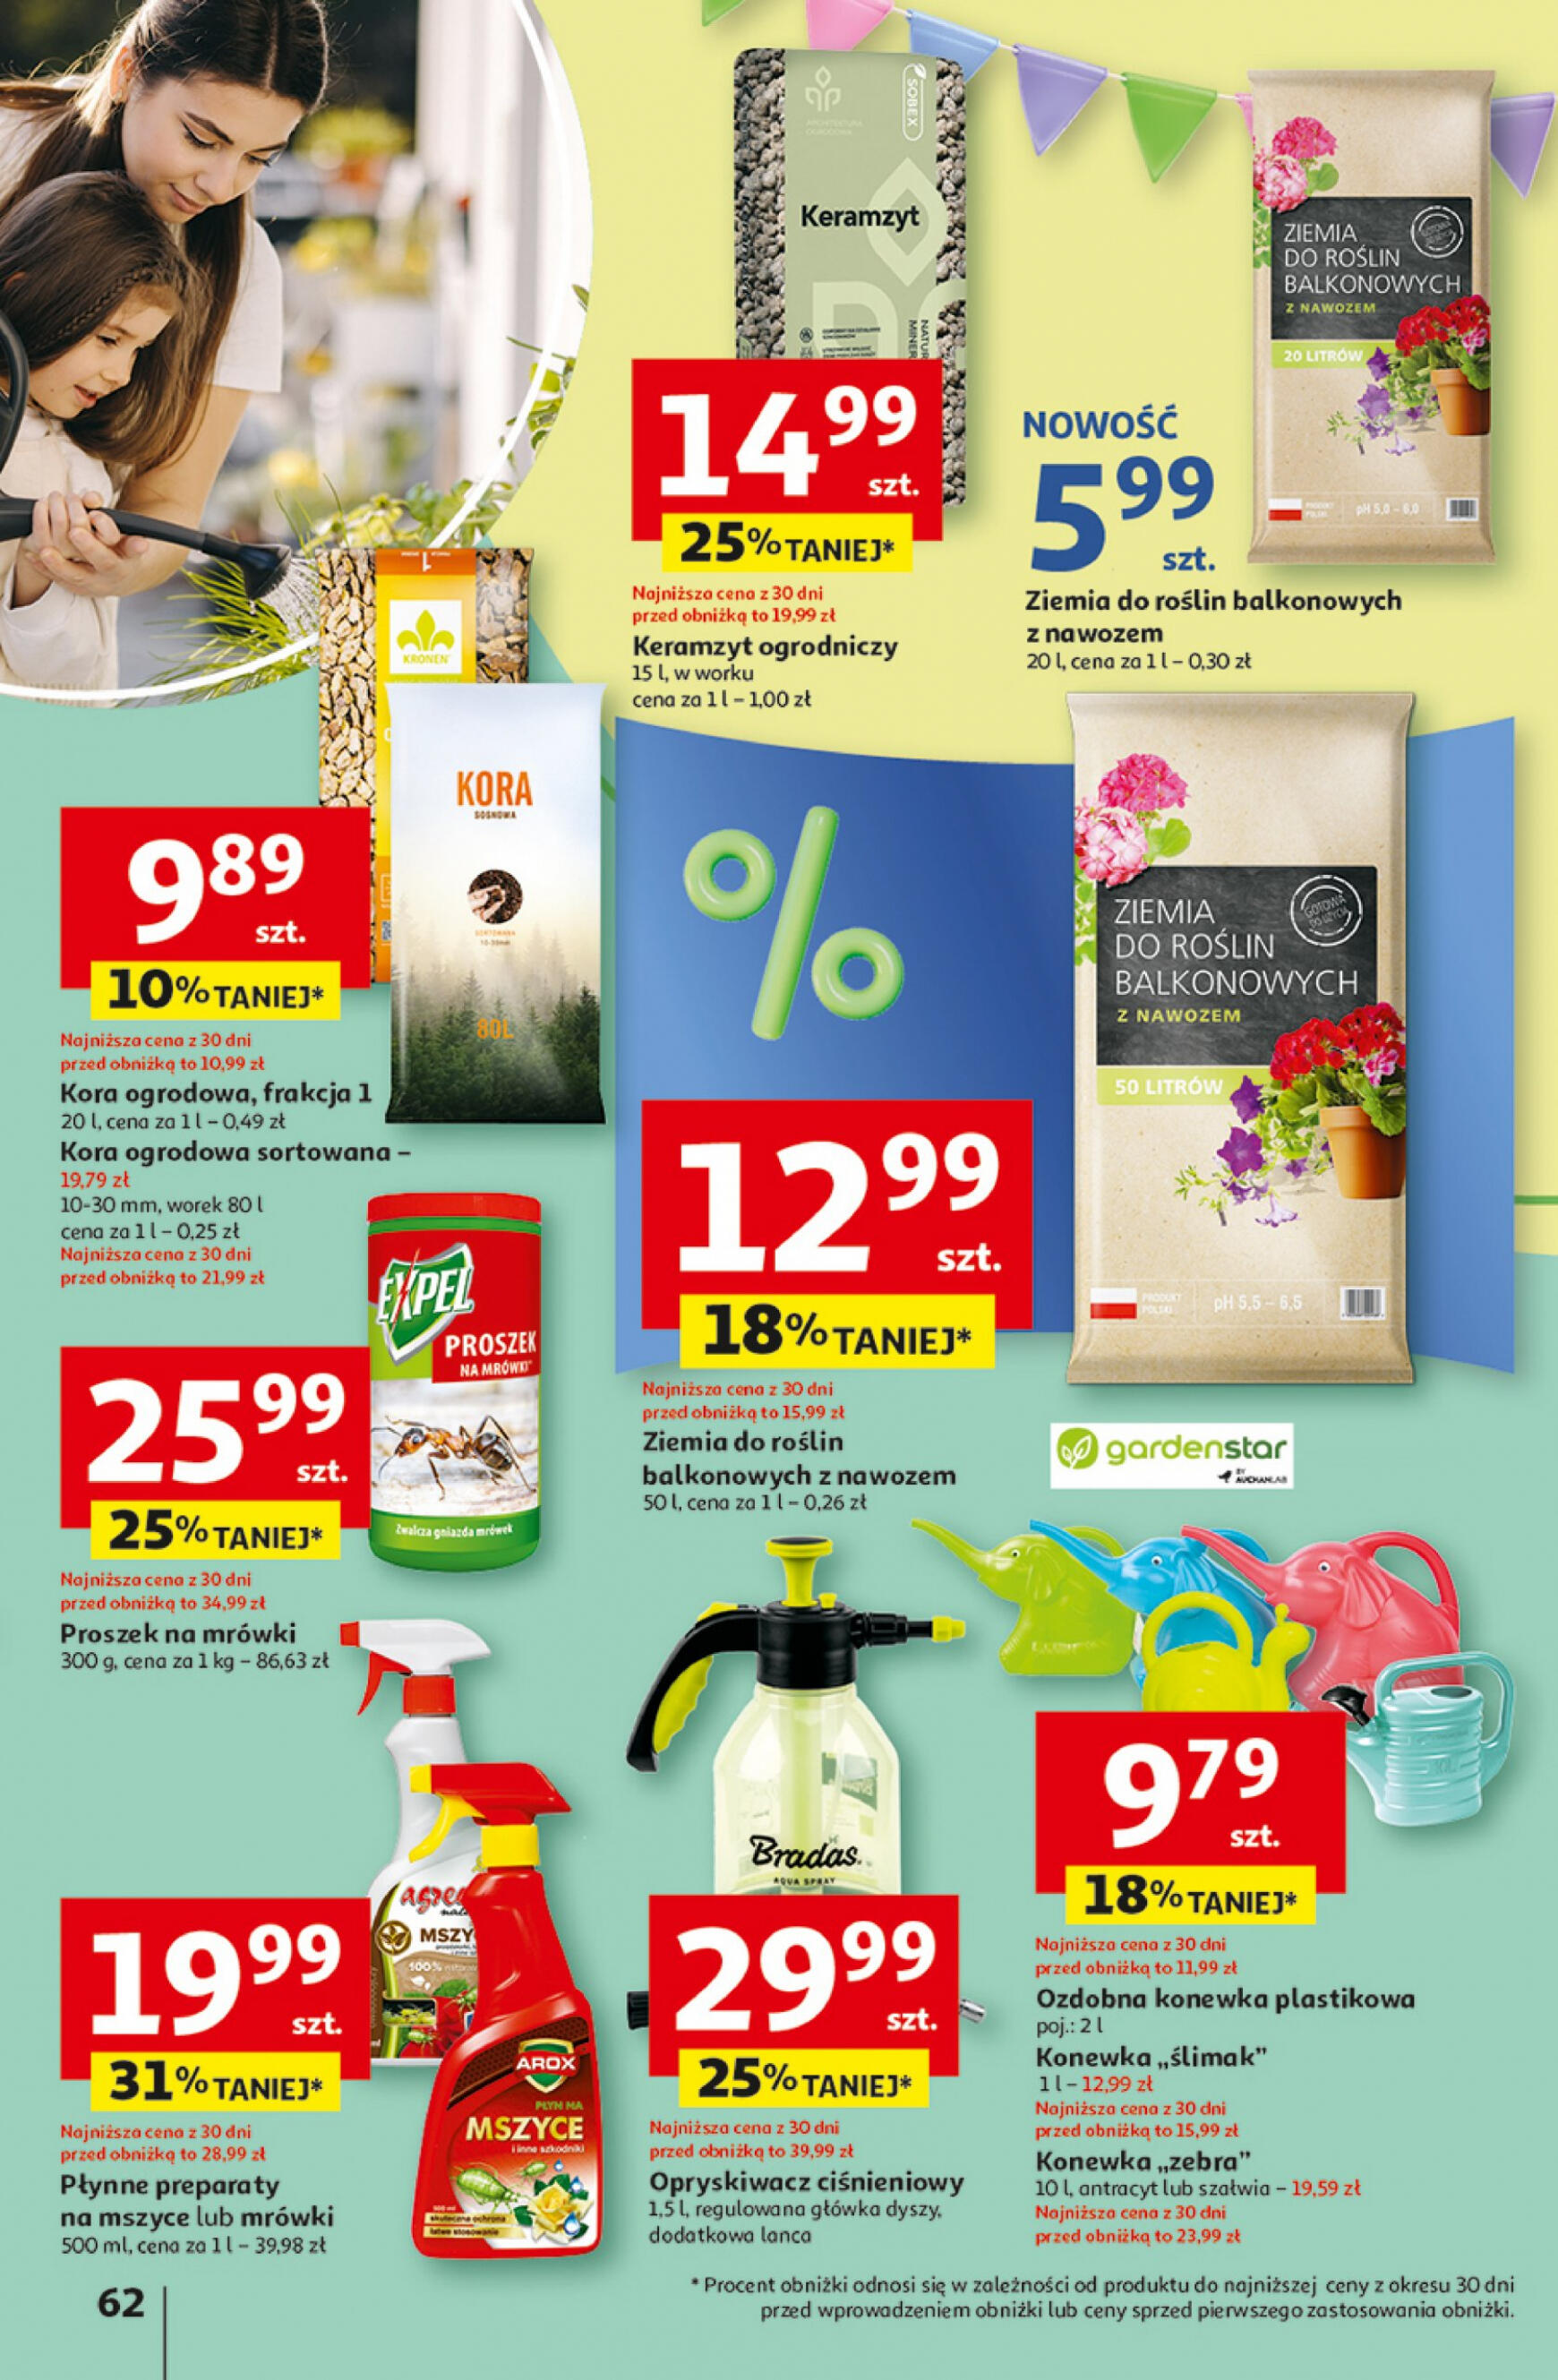 auchan - Hipermarket Auchan - Gazetka Jeszcze taniej na urodziny gazetka aktualna ważna od 25.04. - 30.04. - page: 62